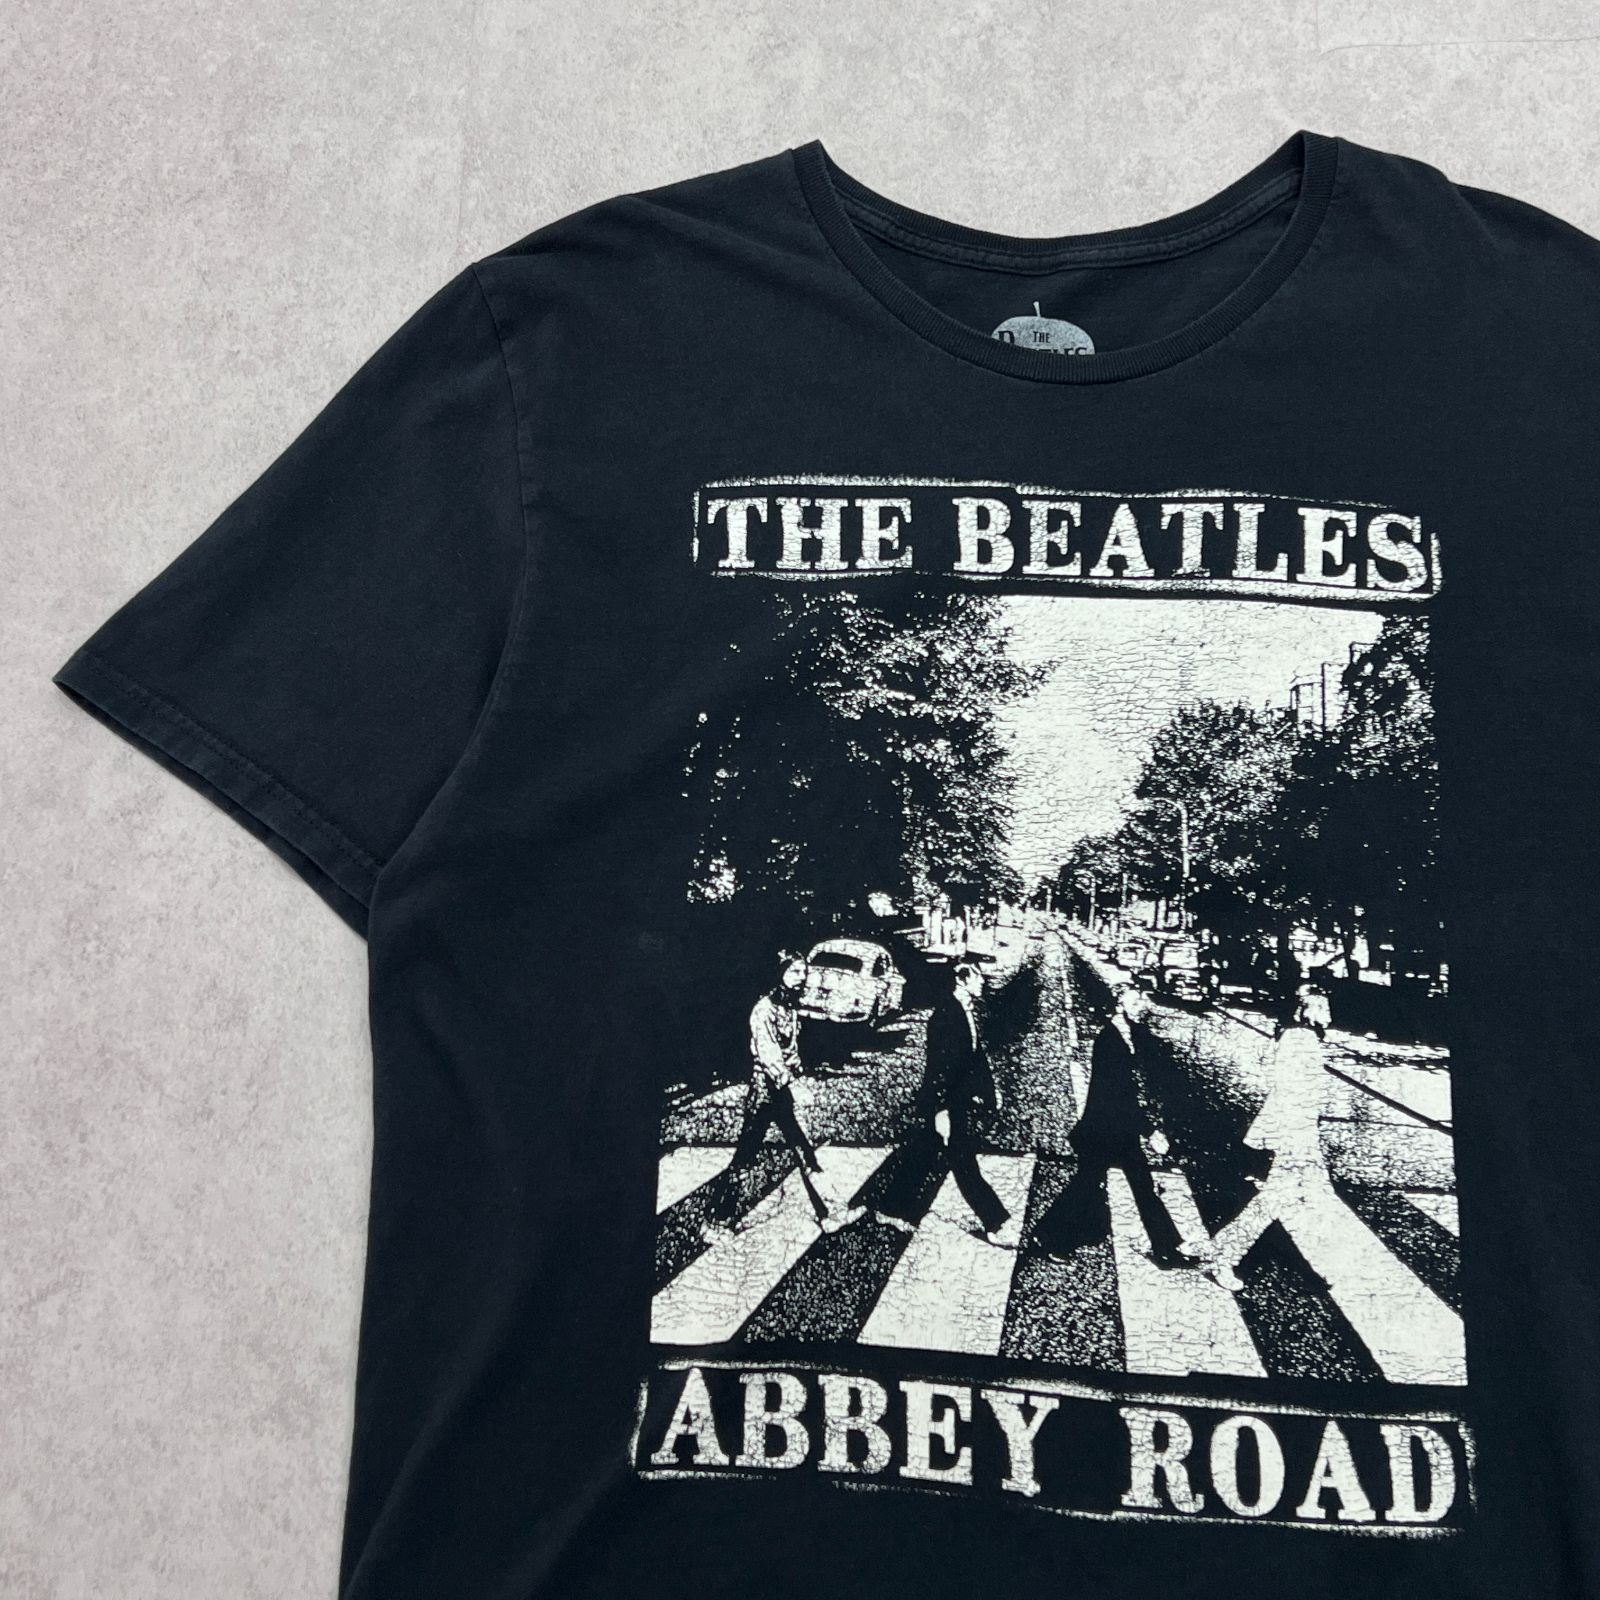 THEBEATLES ビートルズ ABBEY ROAD アビーロード モノクロカラー トップス 半袖Tシャツ プリントTシャツ 古着 ブラック 黒 L  - メルカリ